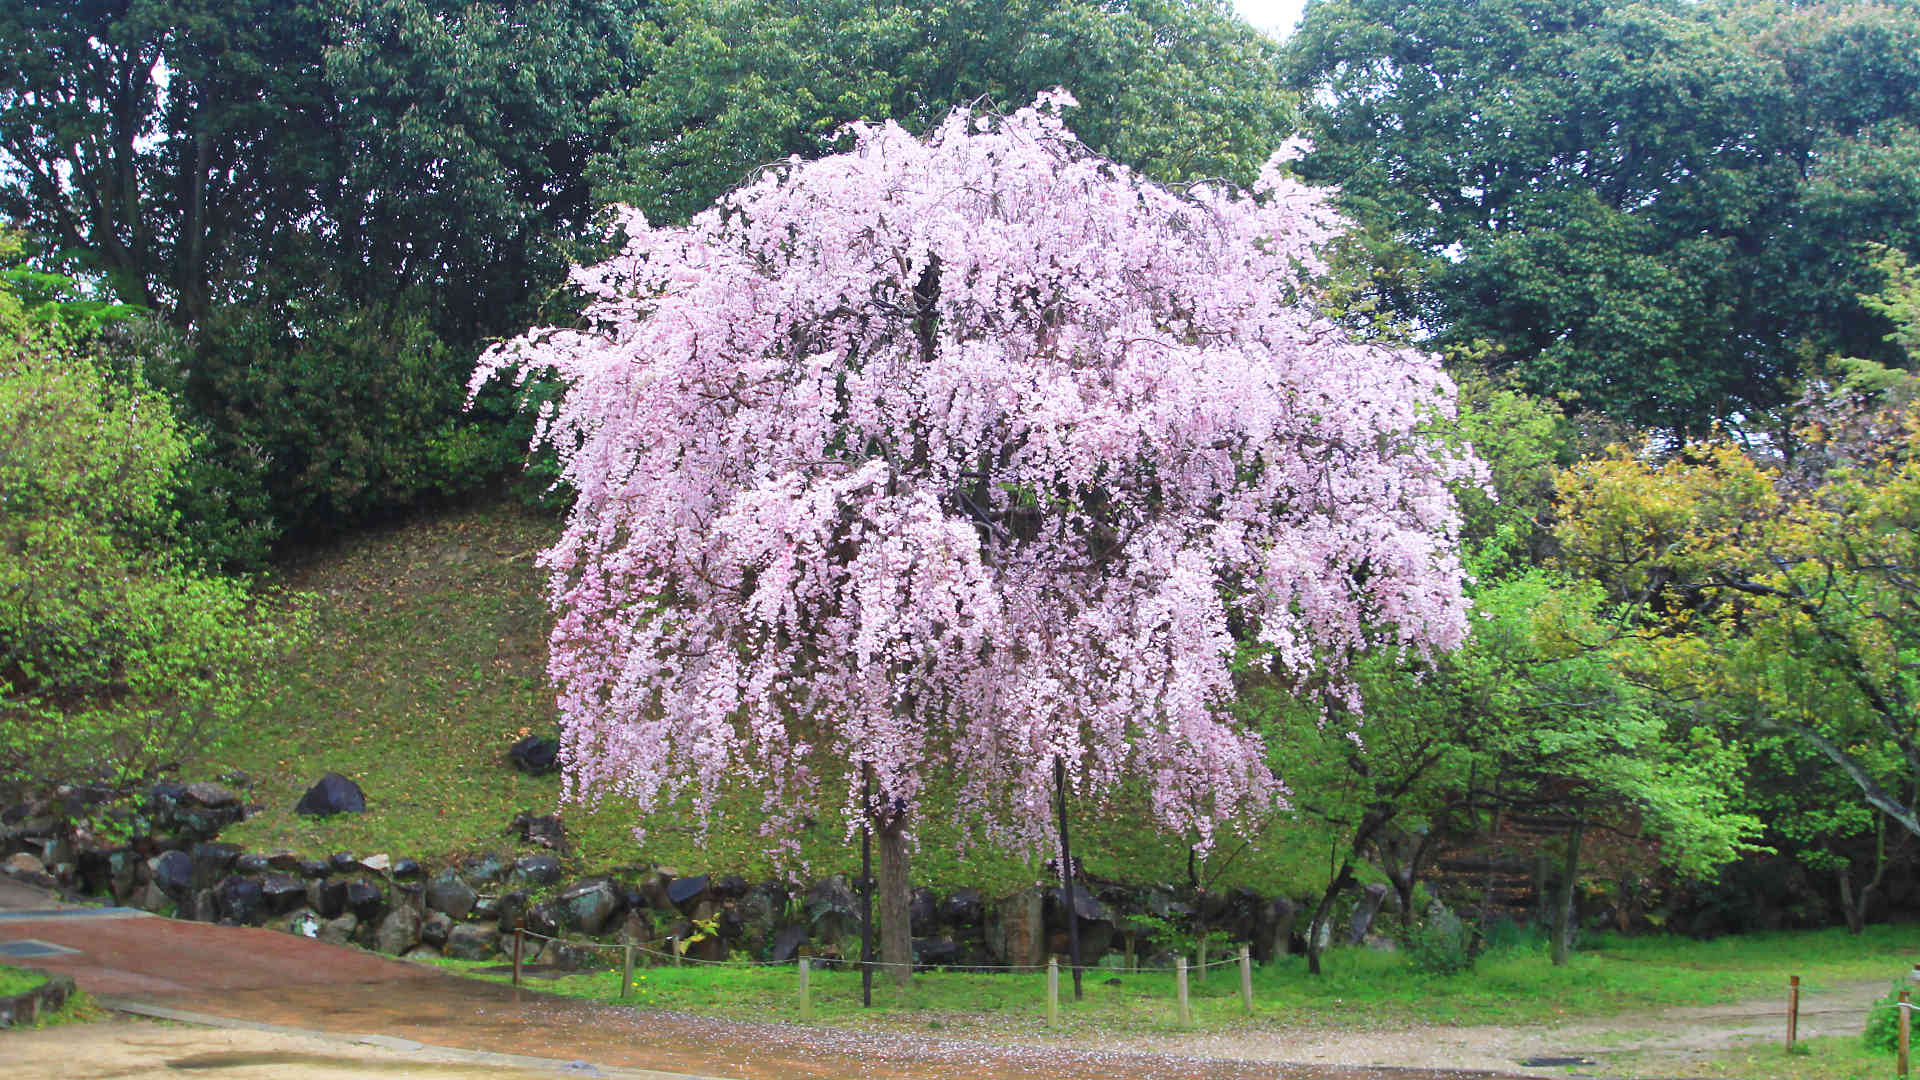 須磨さくらめぐりバス 敦盛桜 無料のお花見バス 須磨浦公園でライトアップイベント開催